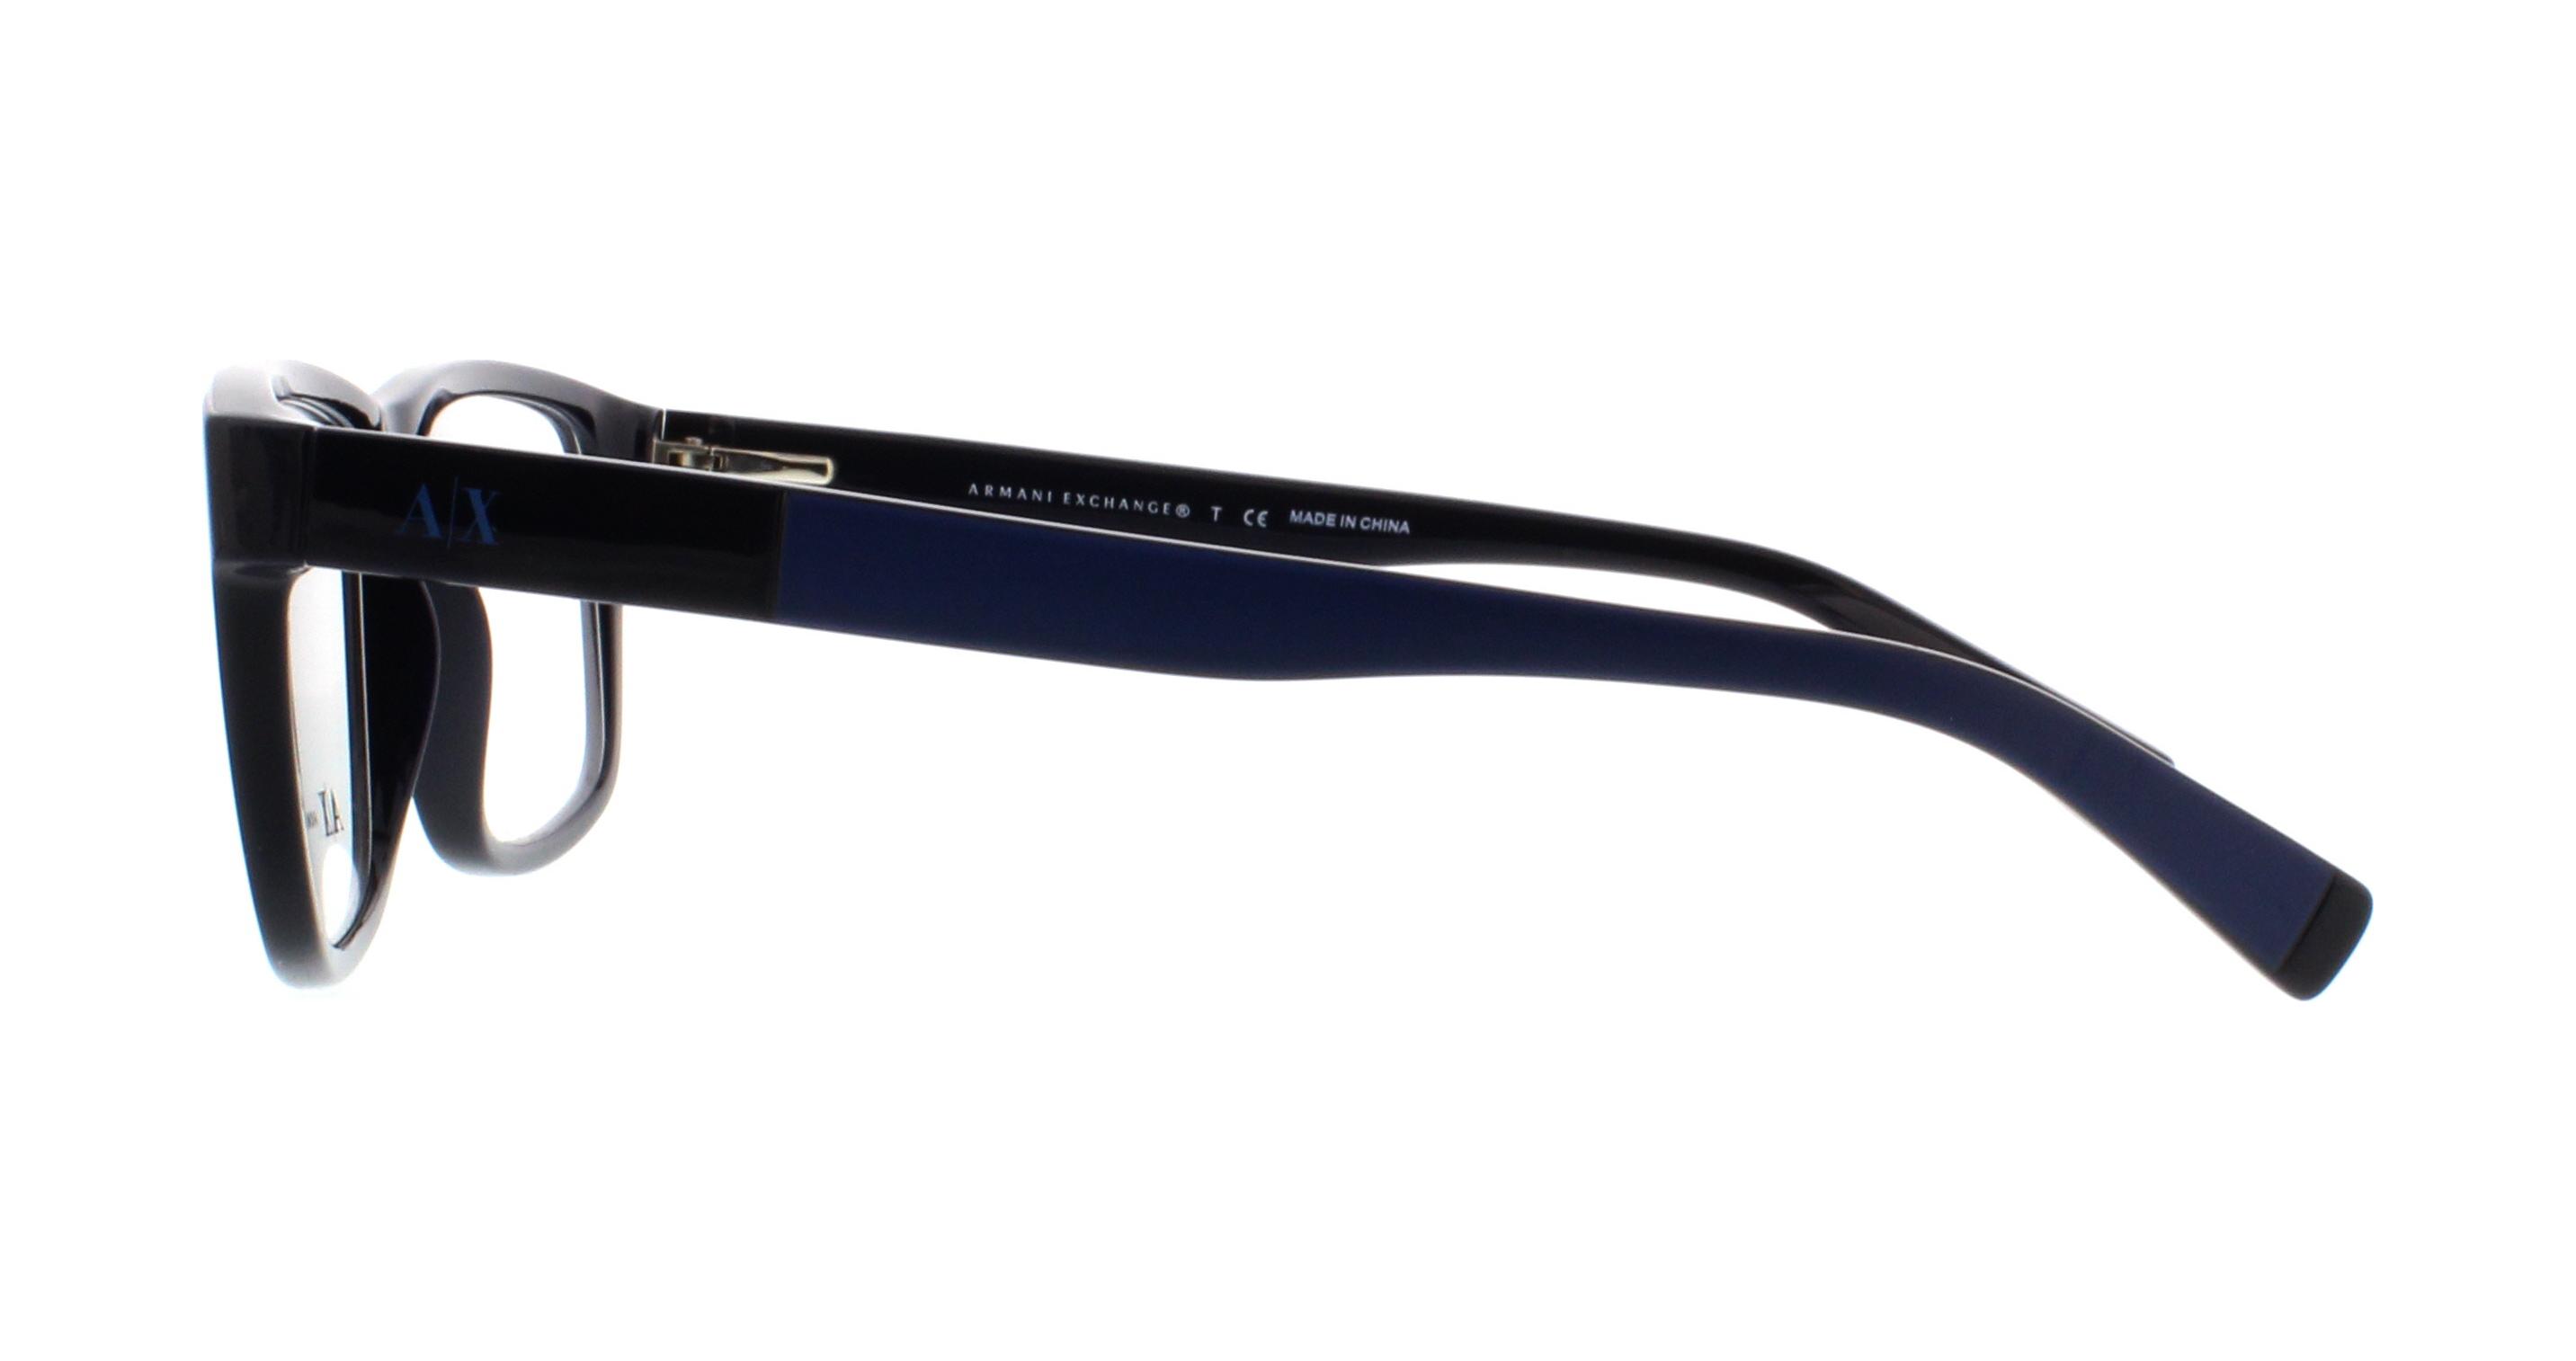 Designer Frames Outlet. Eyeglasses Exchange AX3025 Armani